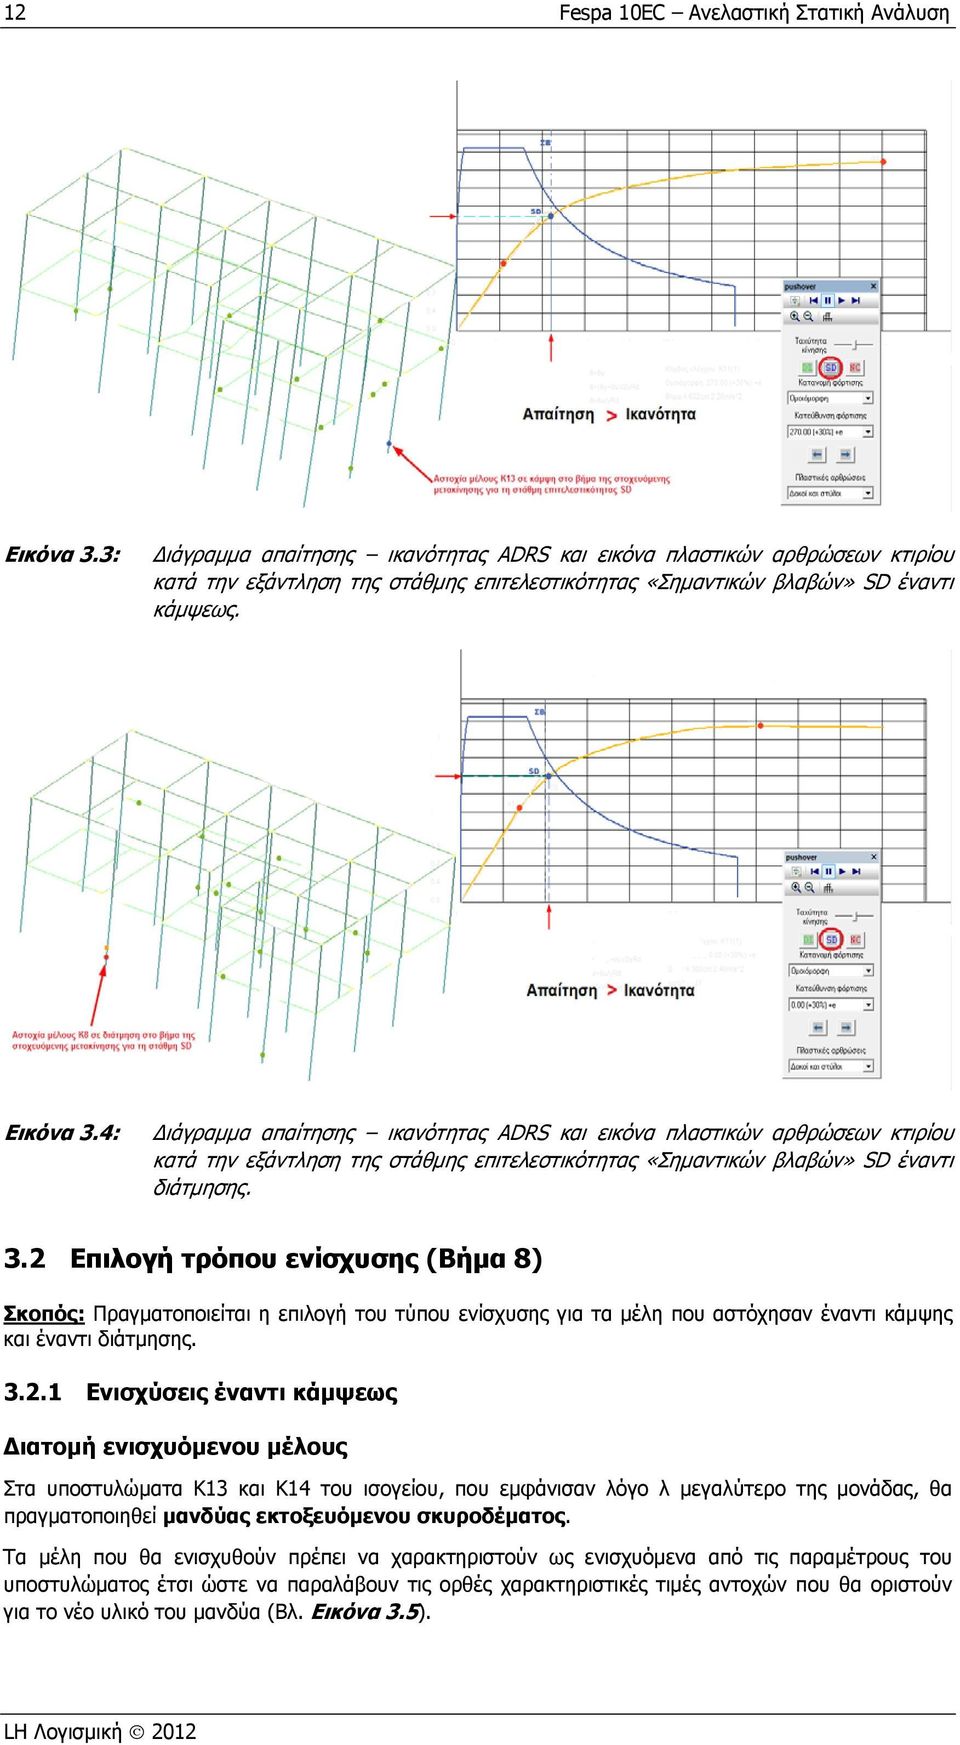 4: ιάγραμμα απαίτησης ικανότητας ADRS και εικόνα πλαστικών αρθρώσεων κτιρίου κατά την εξάντληση της στάθμης επιτελεστικότητας «Σημαντικών βλαβών» SD έναντι διάτμησης. 3.